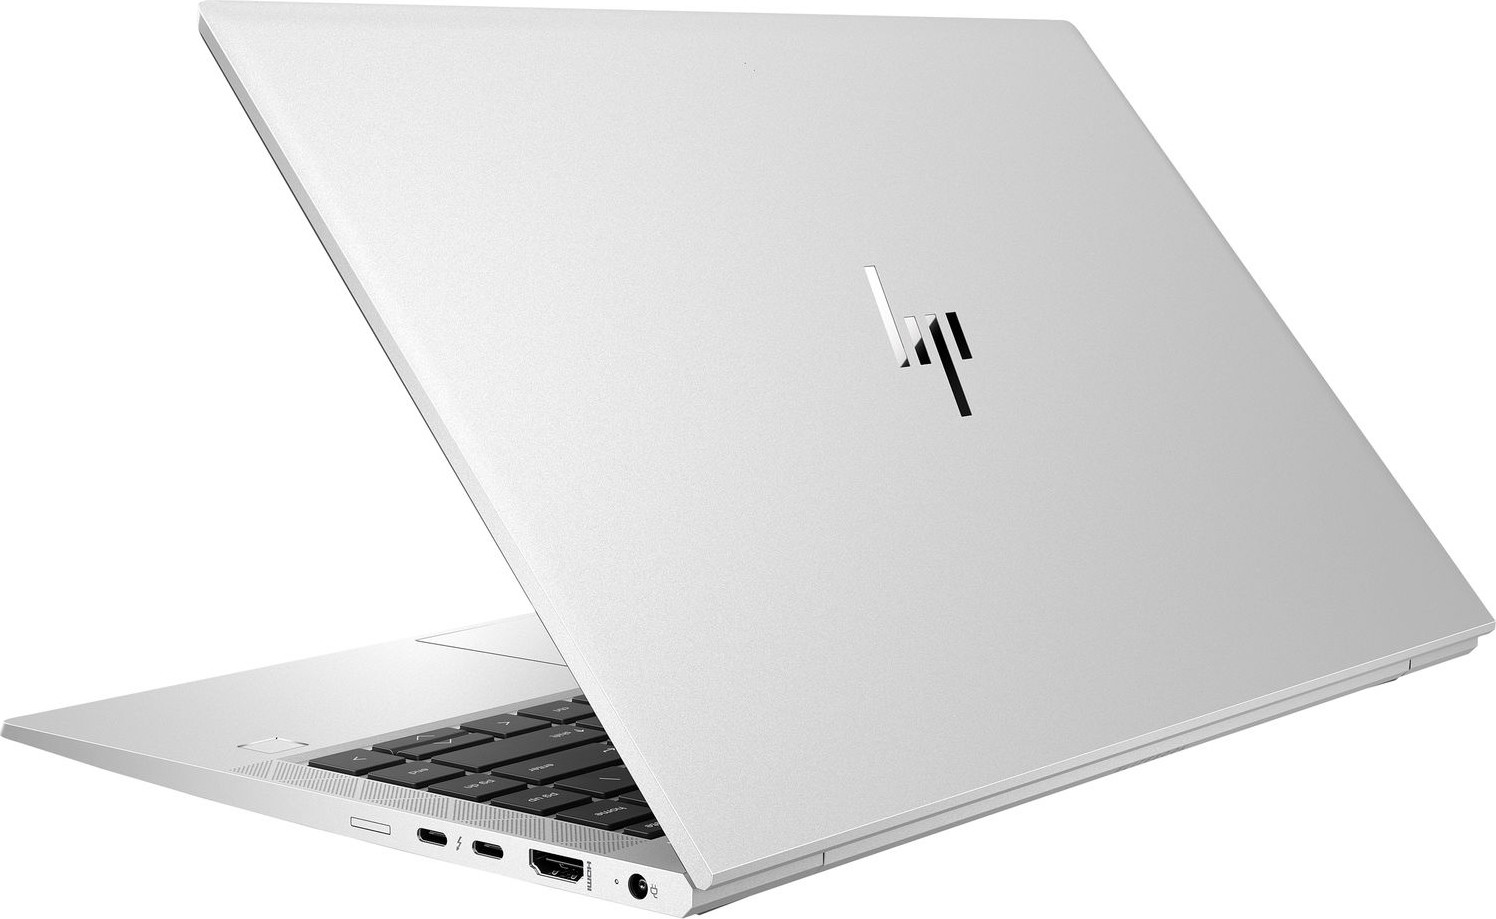 Ноутбук HP EliteBook 840 G7 Intel Core i5-10210U 1.6GHz,14" FHD (1920x1080) IPS 400cd IR ALS AG,8Gb DDR4-2666MHz(1),256Gb SSD NVMe,Al Case,53Wh,FPS,Kbd Backlit,1.33kg,Silver,3yw,Win10Pro-39366